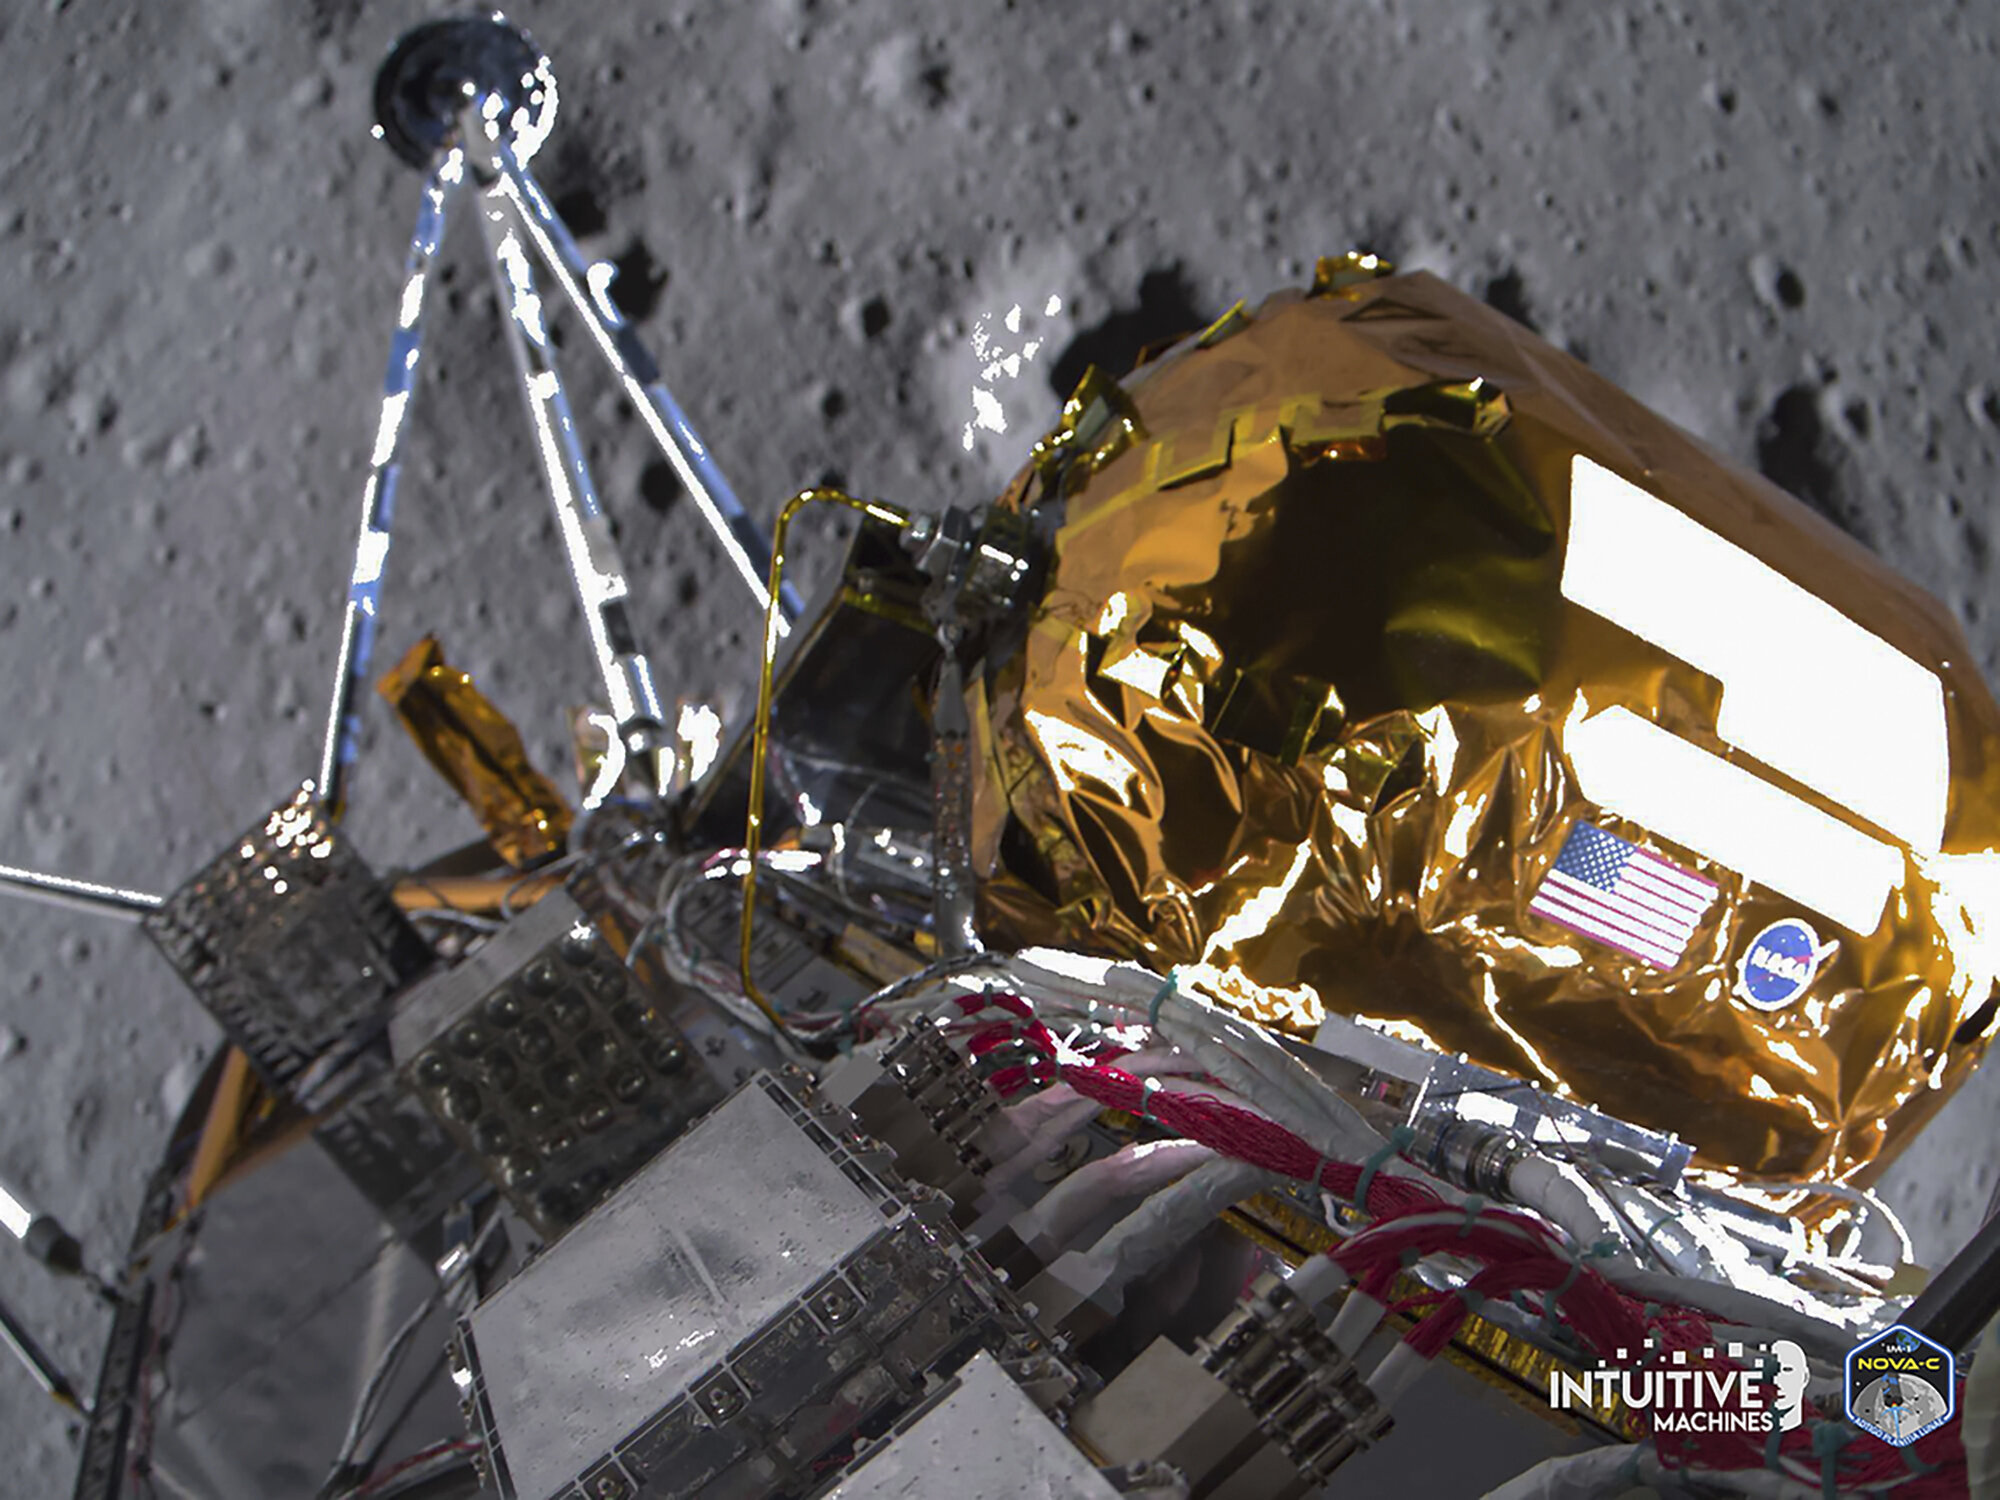 Ova slika koju je podijelila tvrtka Intuitive Machines u utorak, 27. veljače 2024. prikazuje lunarni lander Odisej iznad područja južnog pola Mjeseca. Srušeni lunarni lander još uvijek emitira slike Mjeseca, jer se približavaju posljednji sati njegovog života. Fotografije su snimljene malo prije slijetanja prošlog četvrtka. Zasluge: Intuitive Machines.